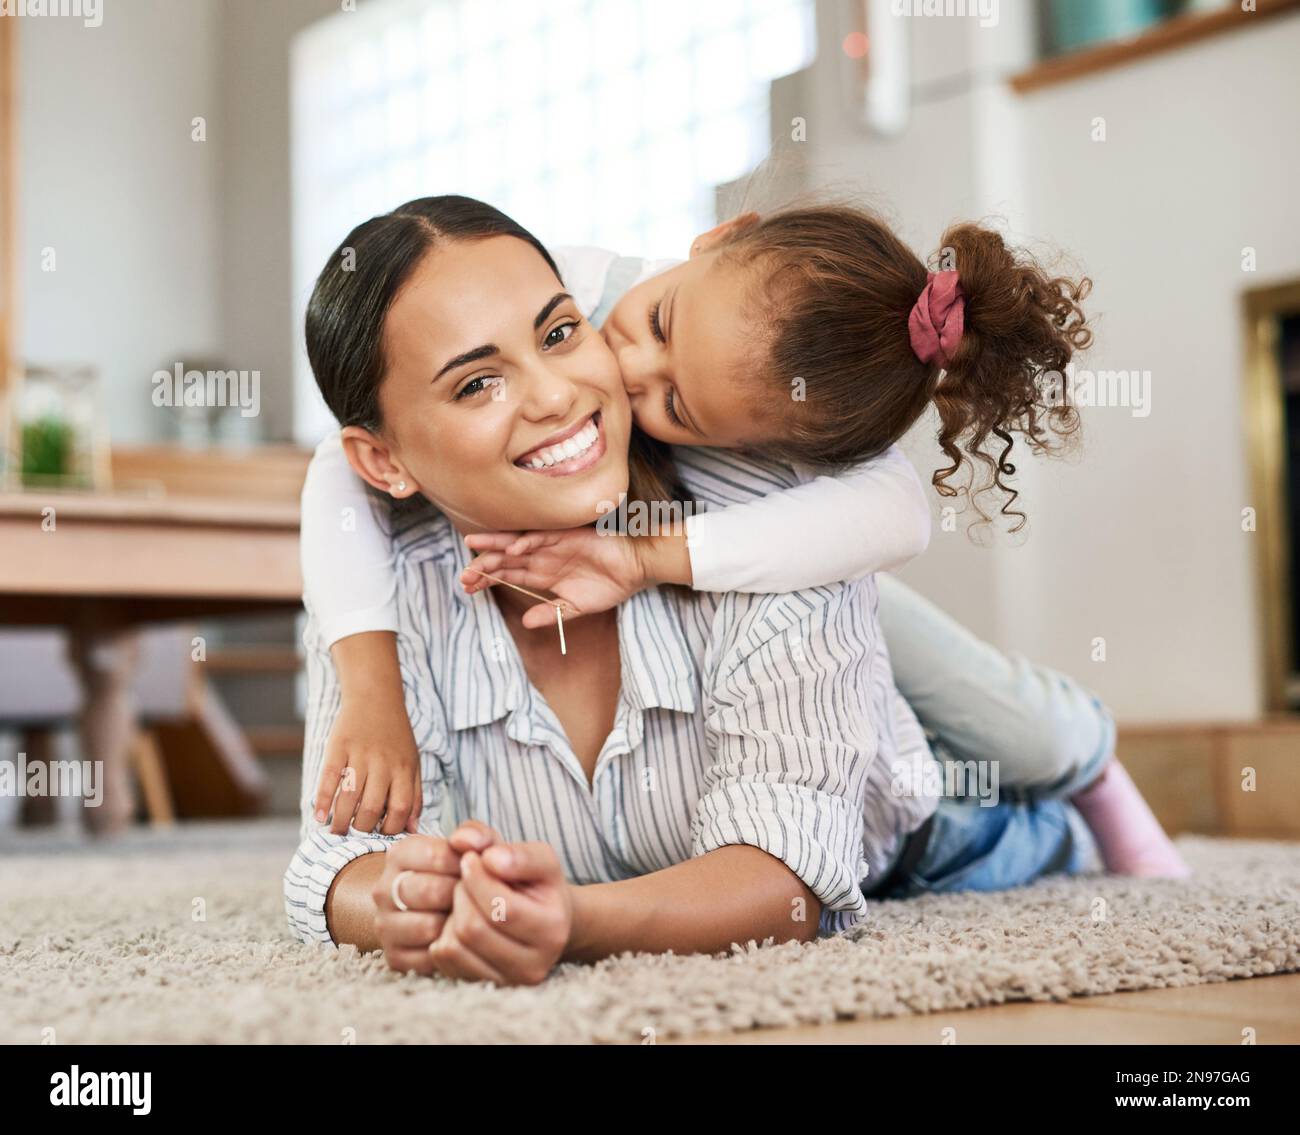 Beati ad essere tanto amati. una bambina che dà alla madre un bacio sulla guancia mentre si rilassa insieme a casa. Foto Stock